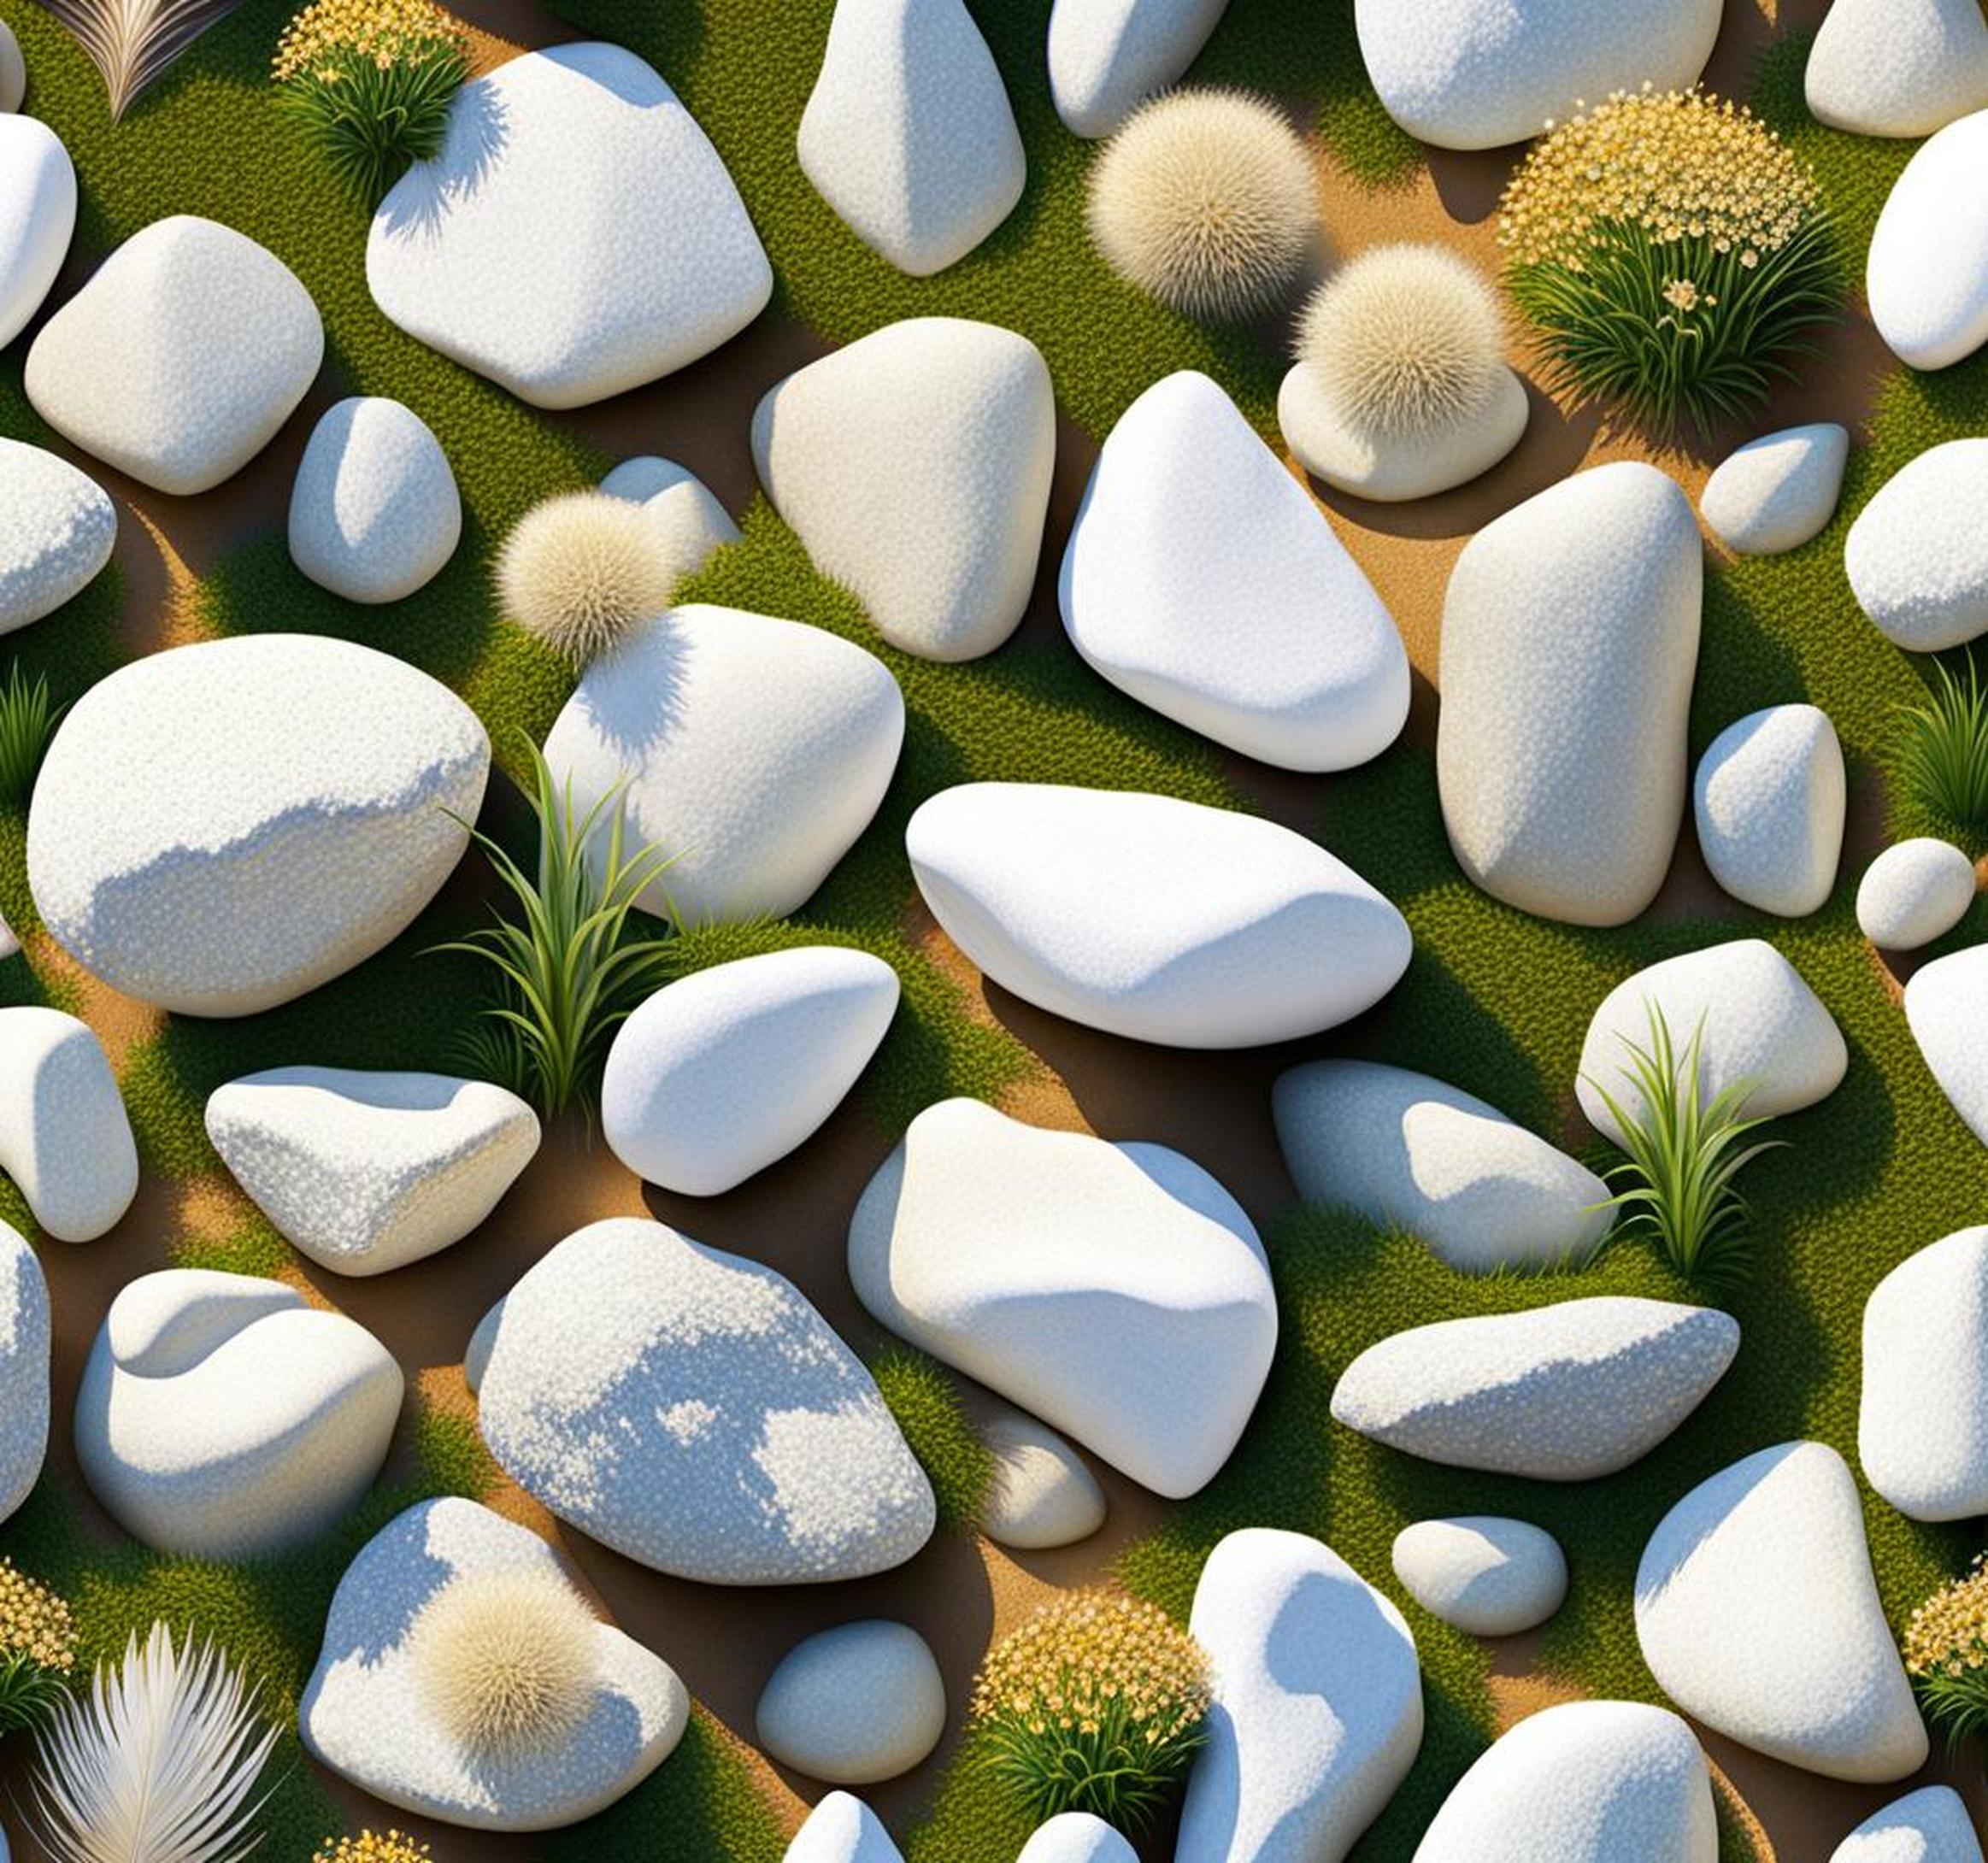 white rocks for gardens